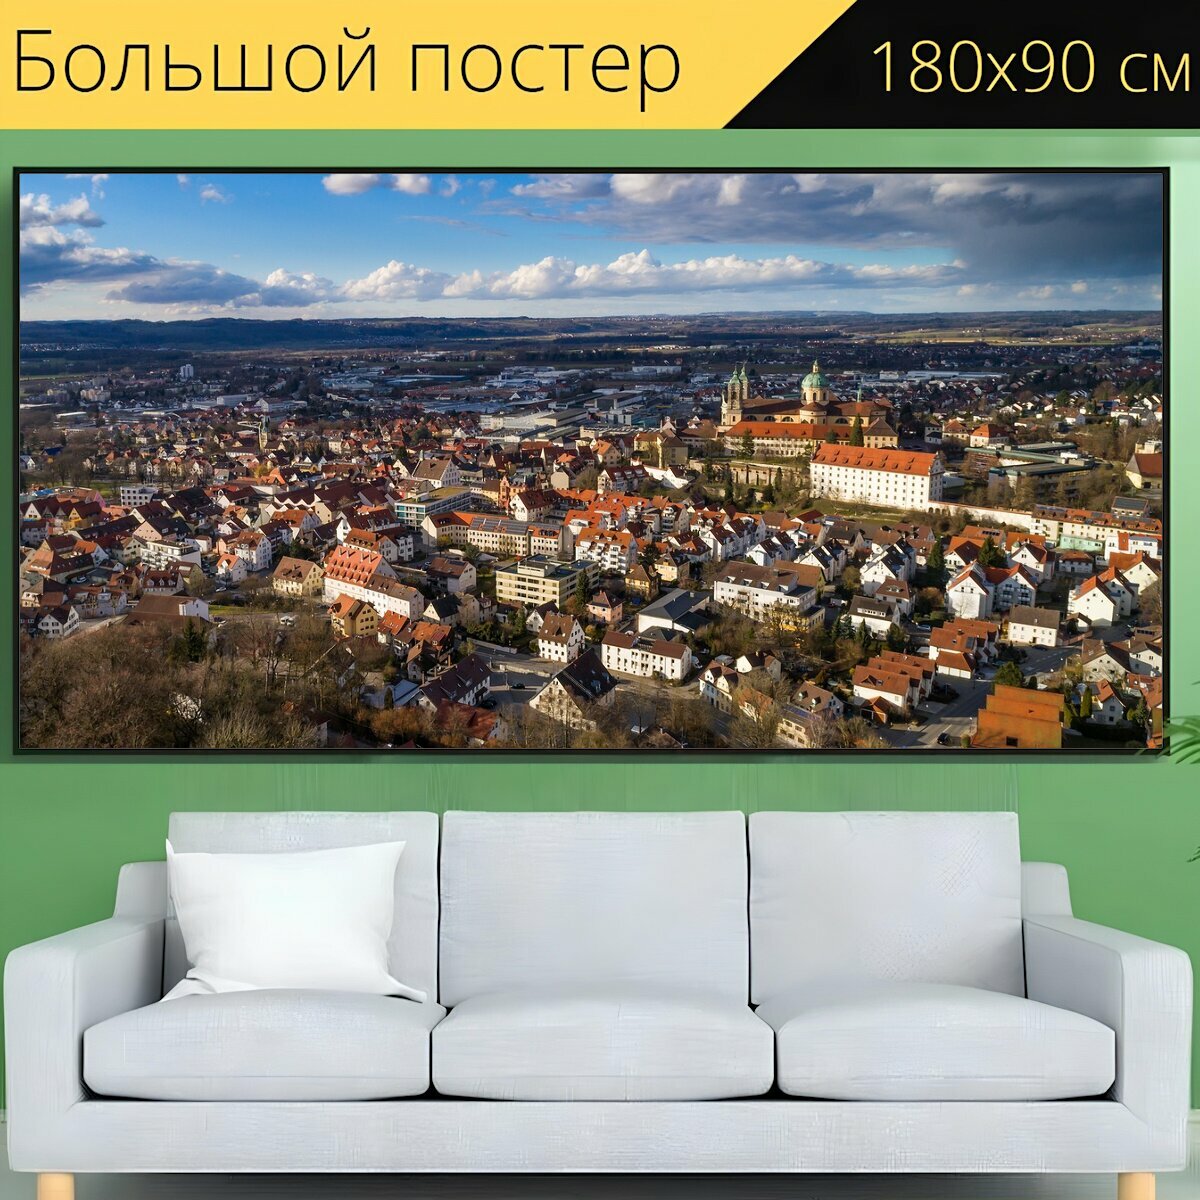 Большой постер "Город, панорама, городской ландшафт" 180 x 90 см. для интерьера